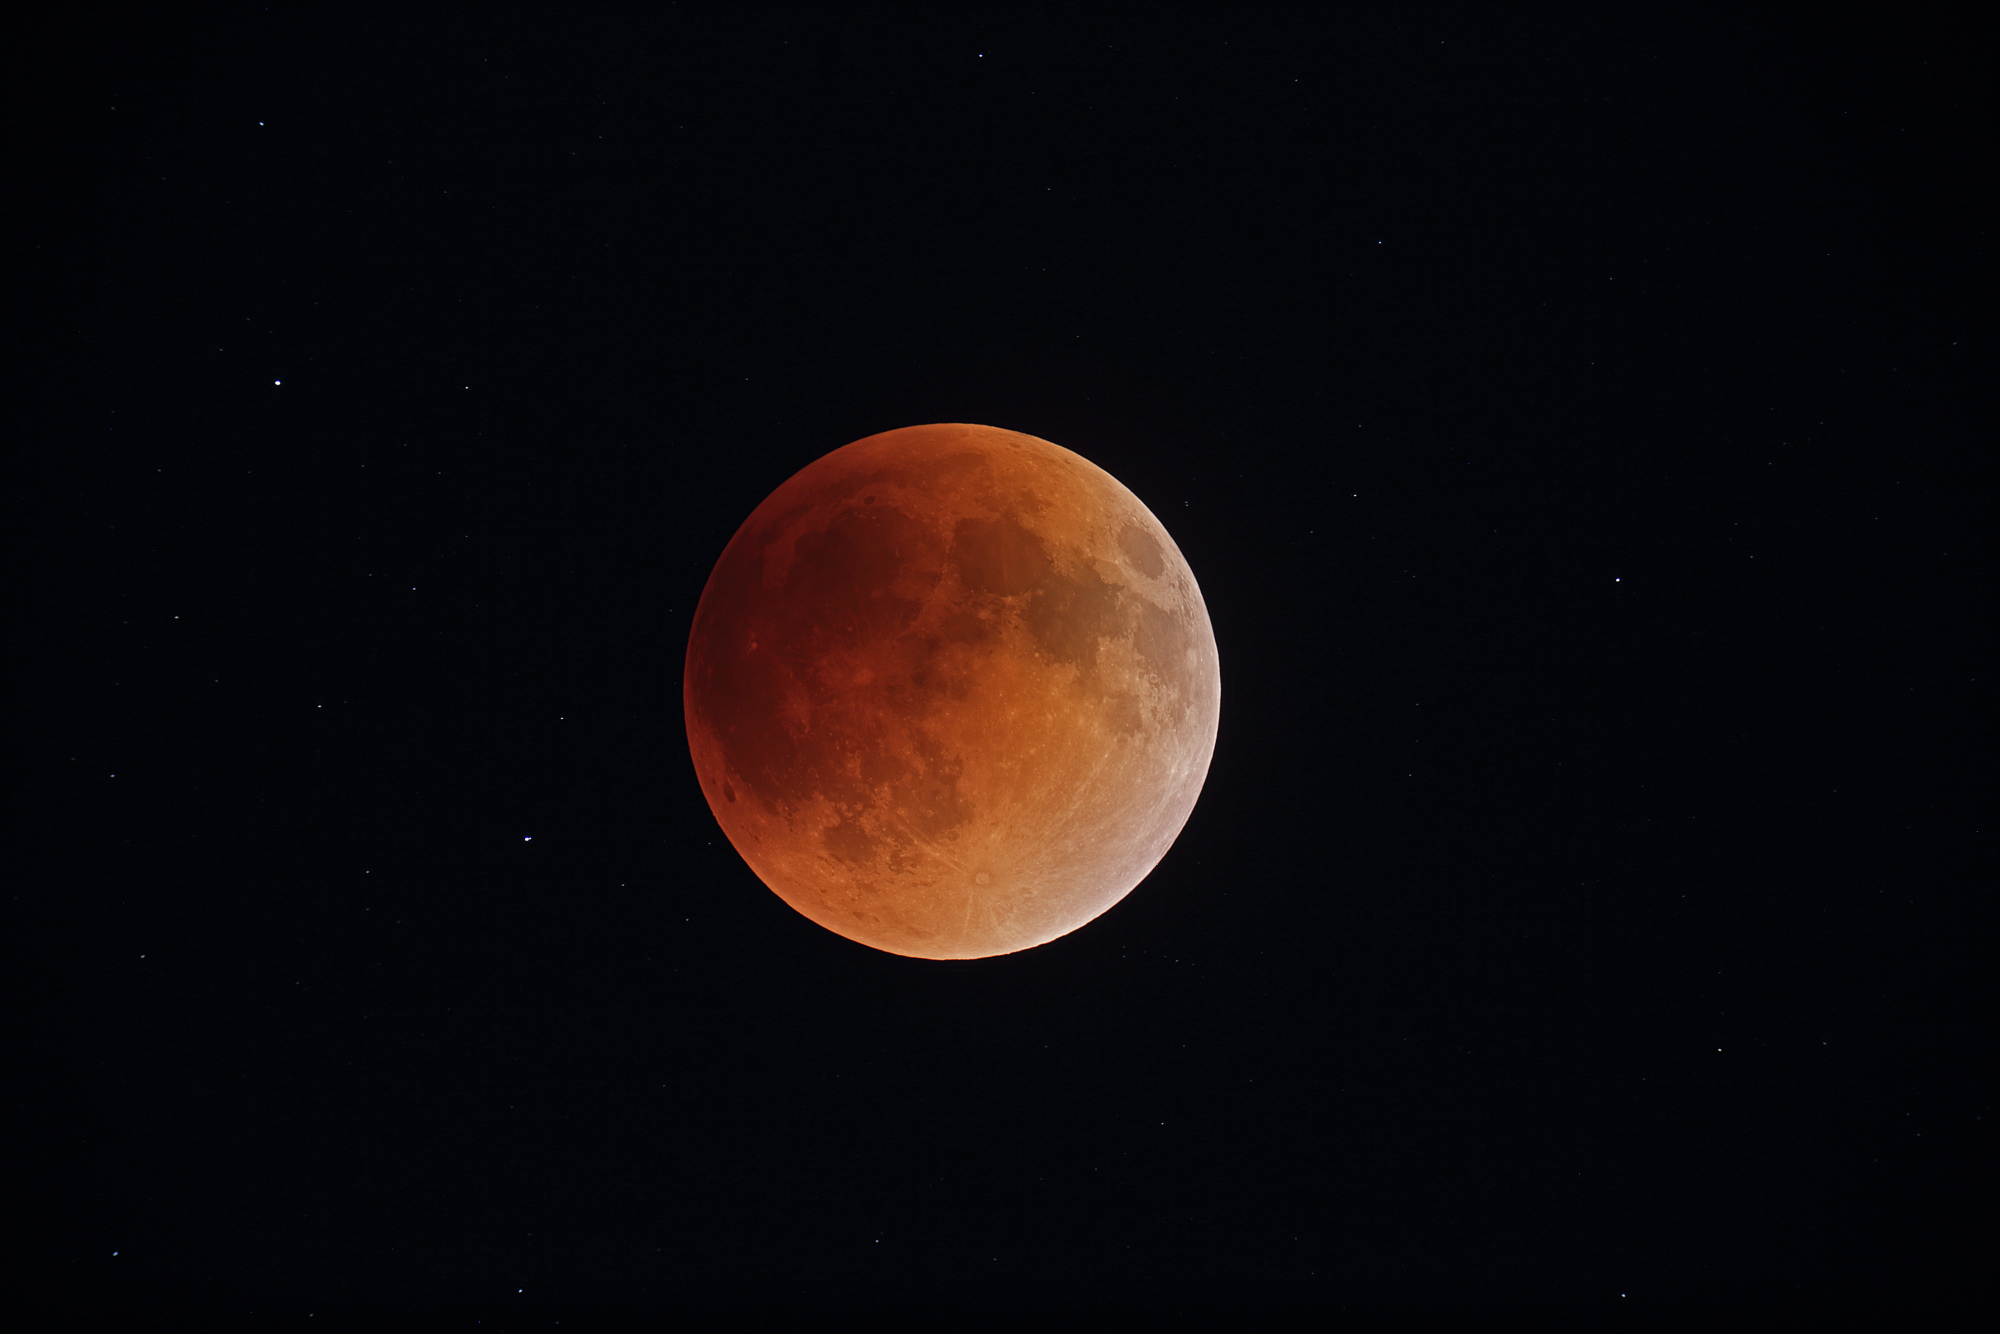 Lune_eclipse_DBorcard_220515_23h40HAE.thumb.jpg.b70d908a42551e8e6f72f1821fec8803.jpg